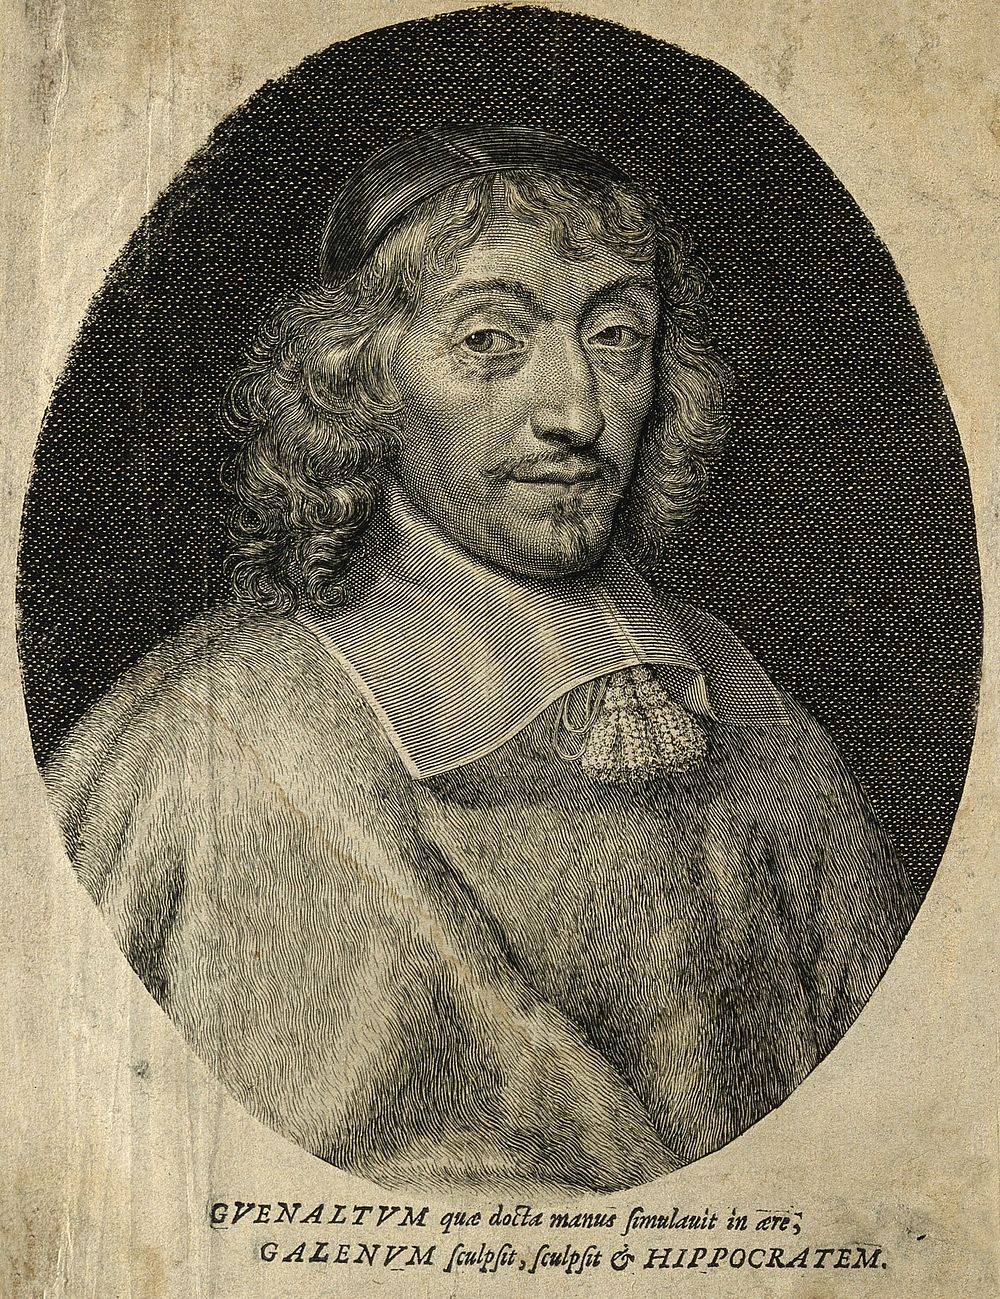 François Guénault. Line engraving.